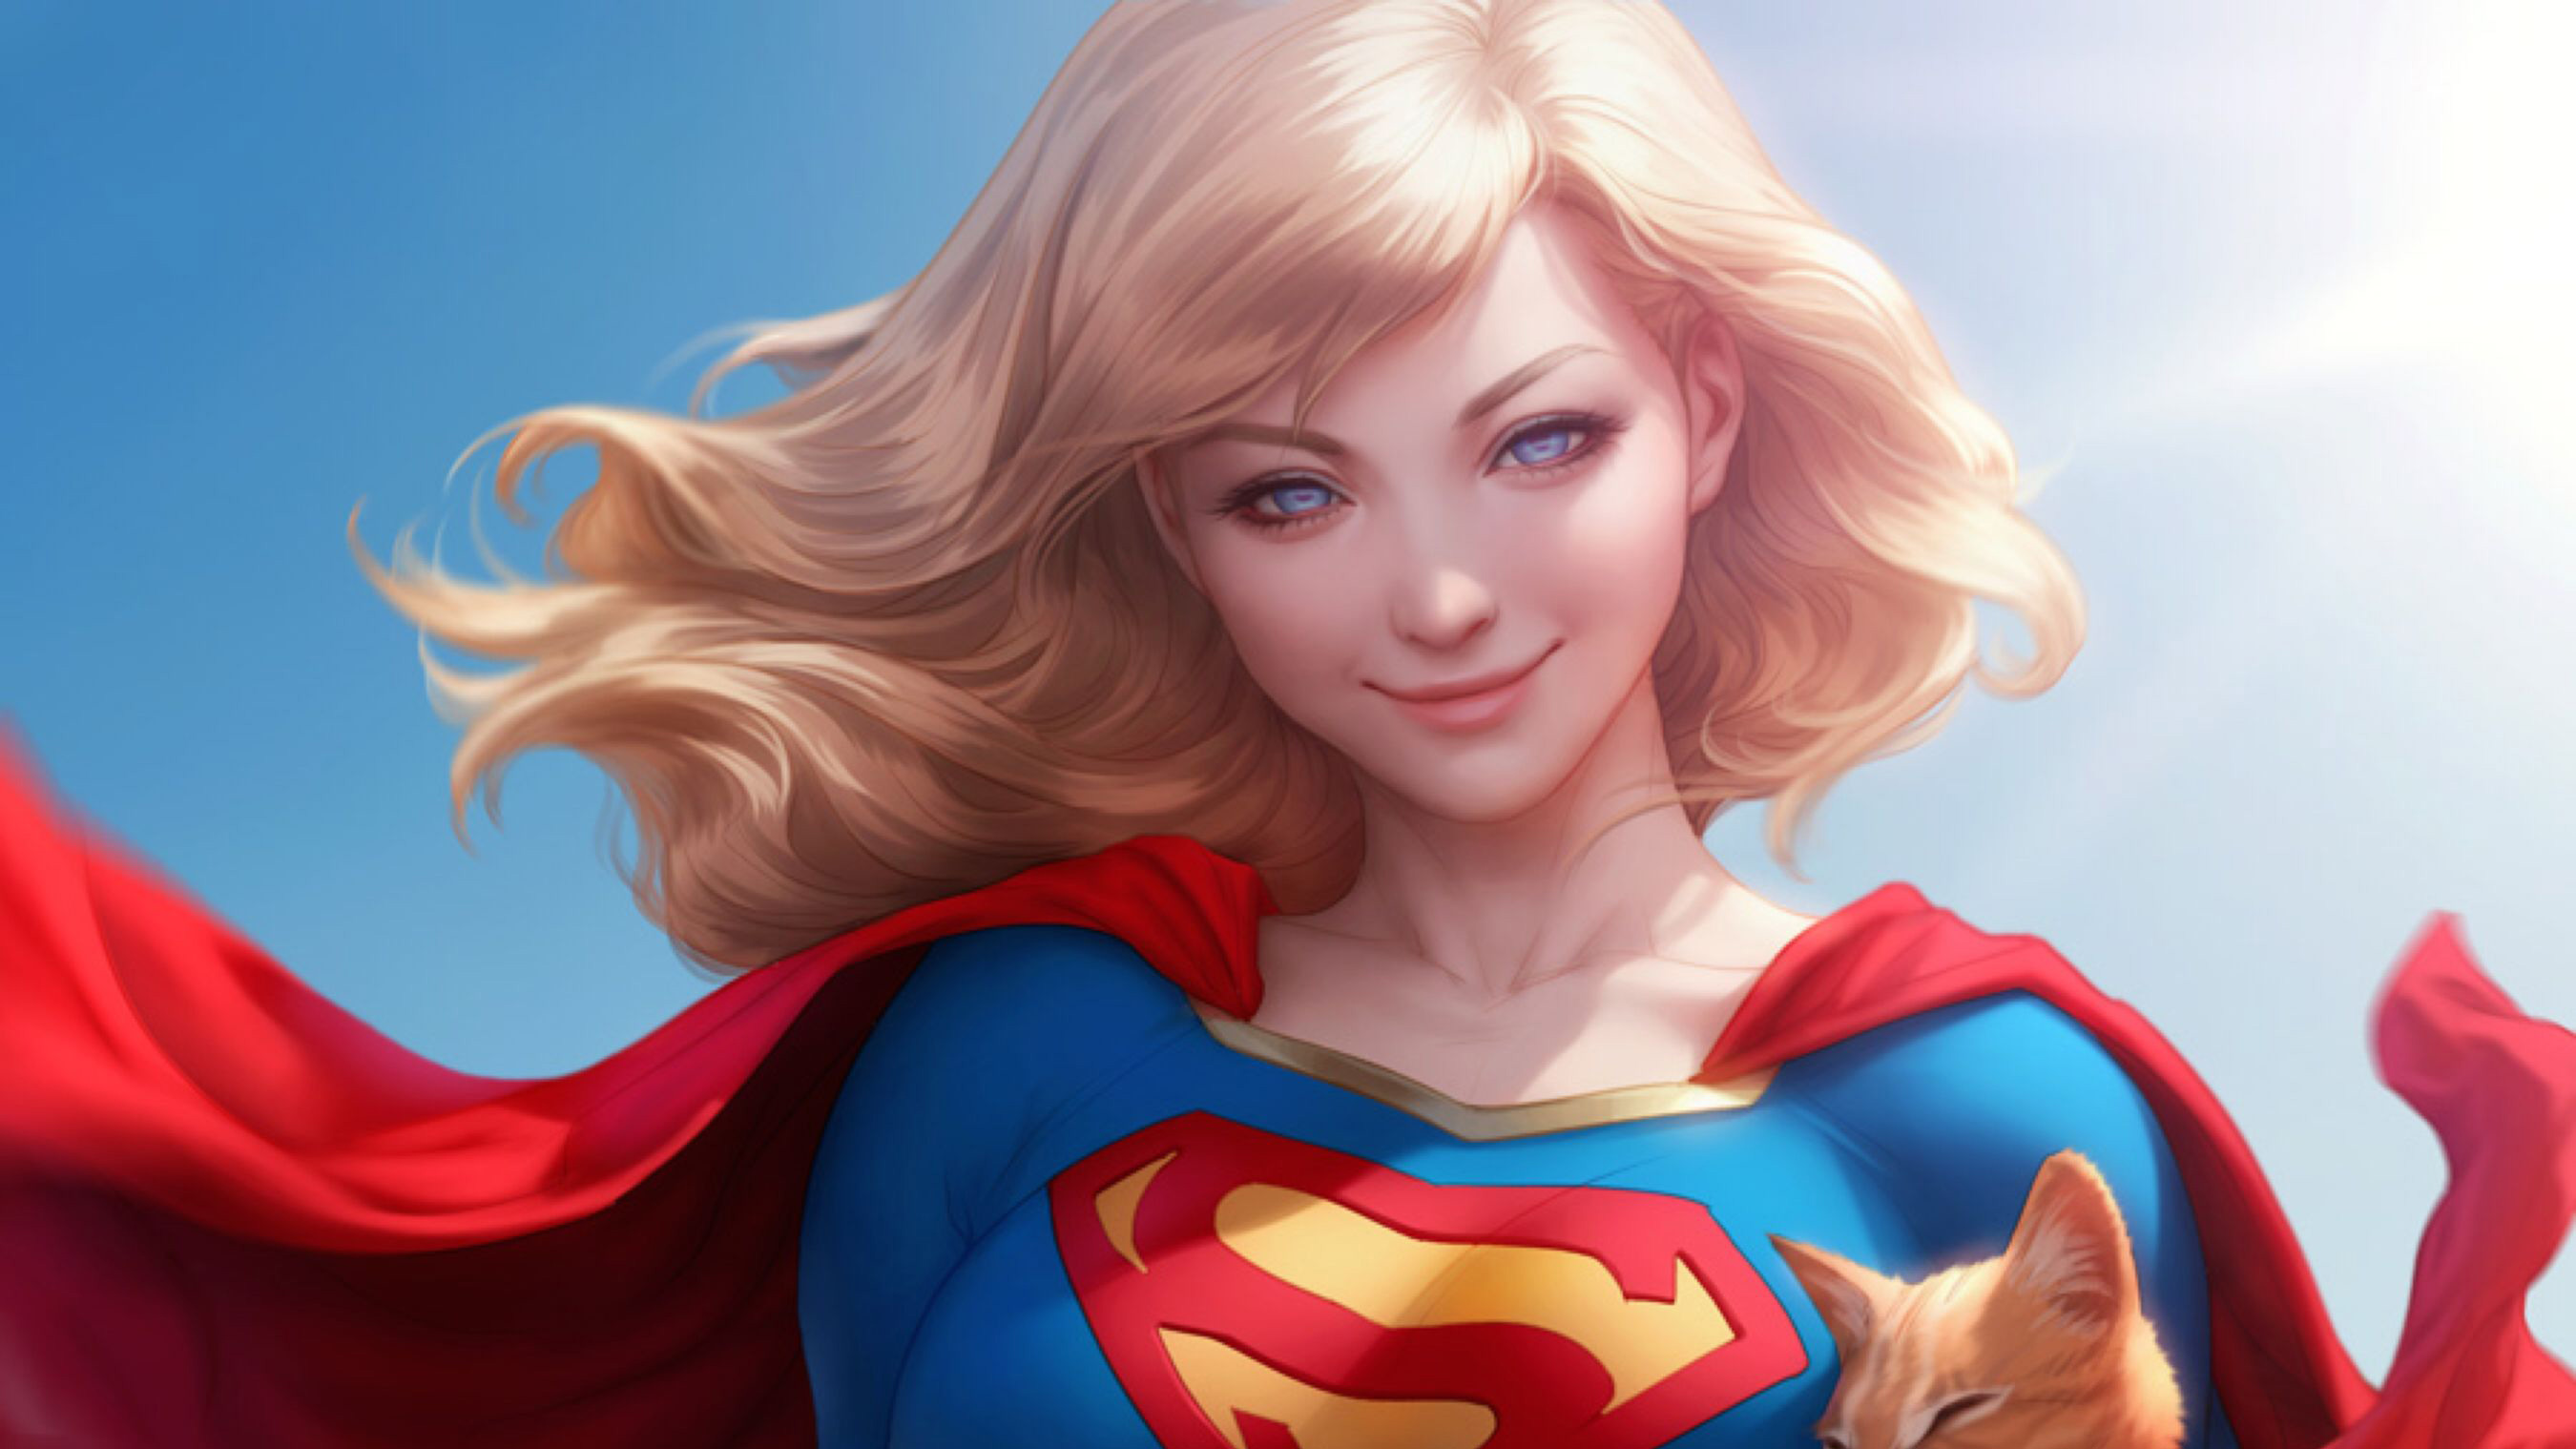 art girl fondos de pantalla hd,superhéroe,superhombre,personaje de ficción,héroe,dibujos animados